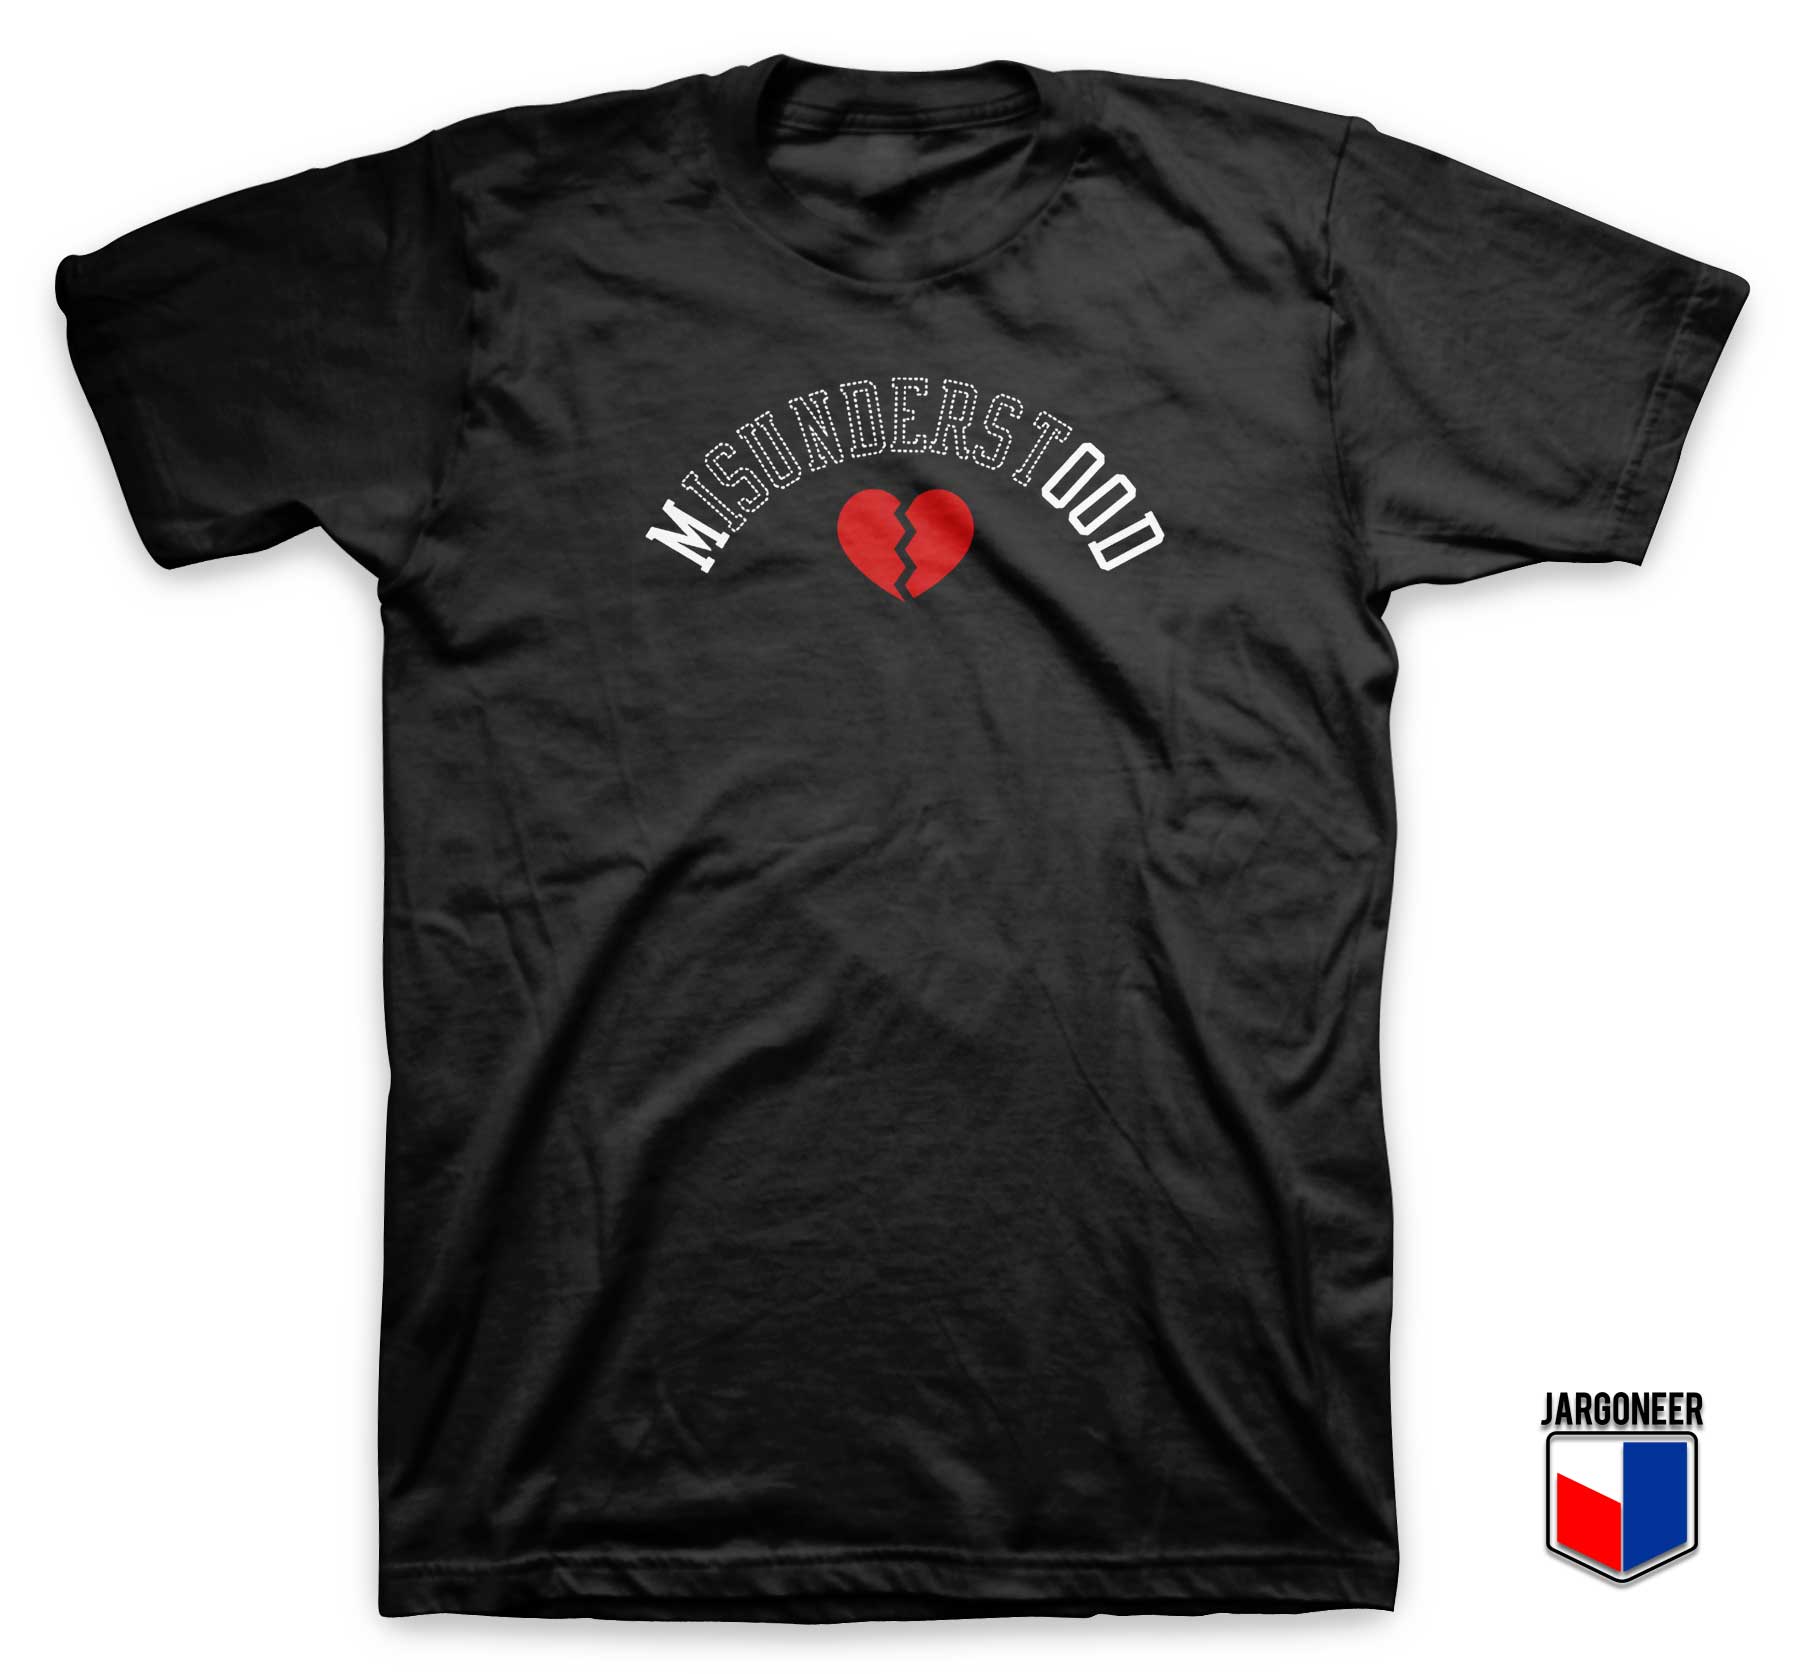 Misunderstood Mood T Shirt - Shop Unique Graphic Cool Shirt Designs